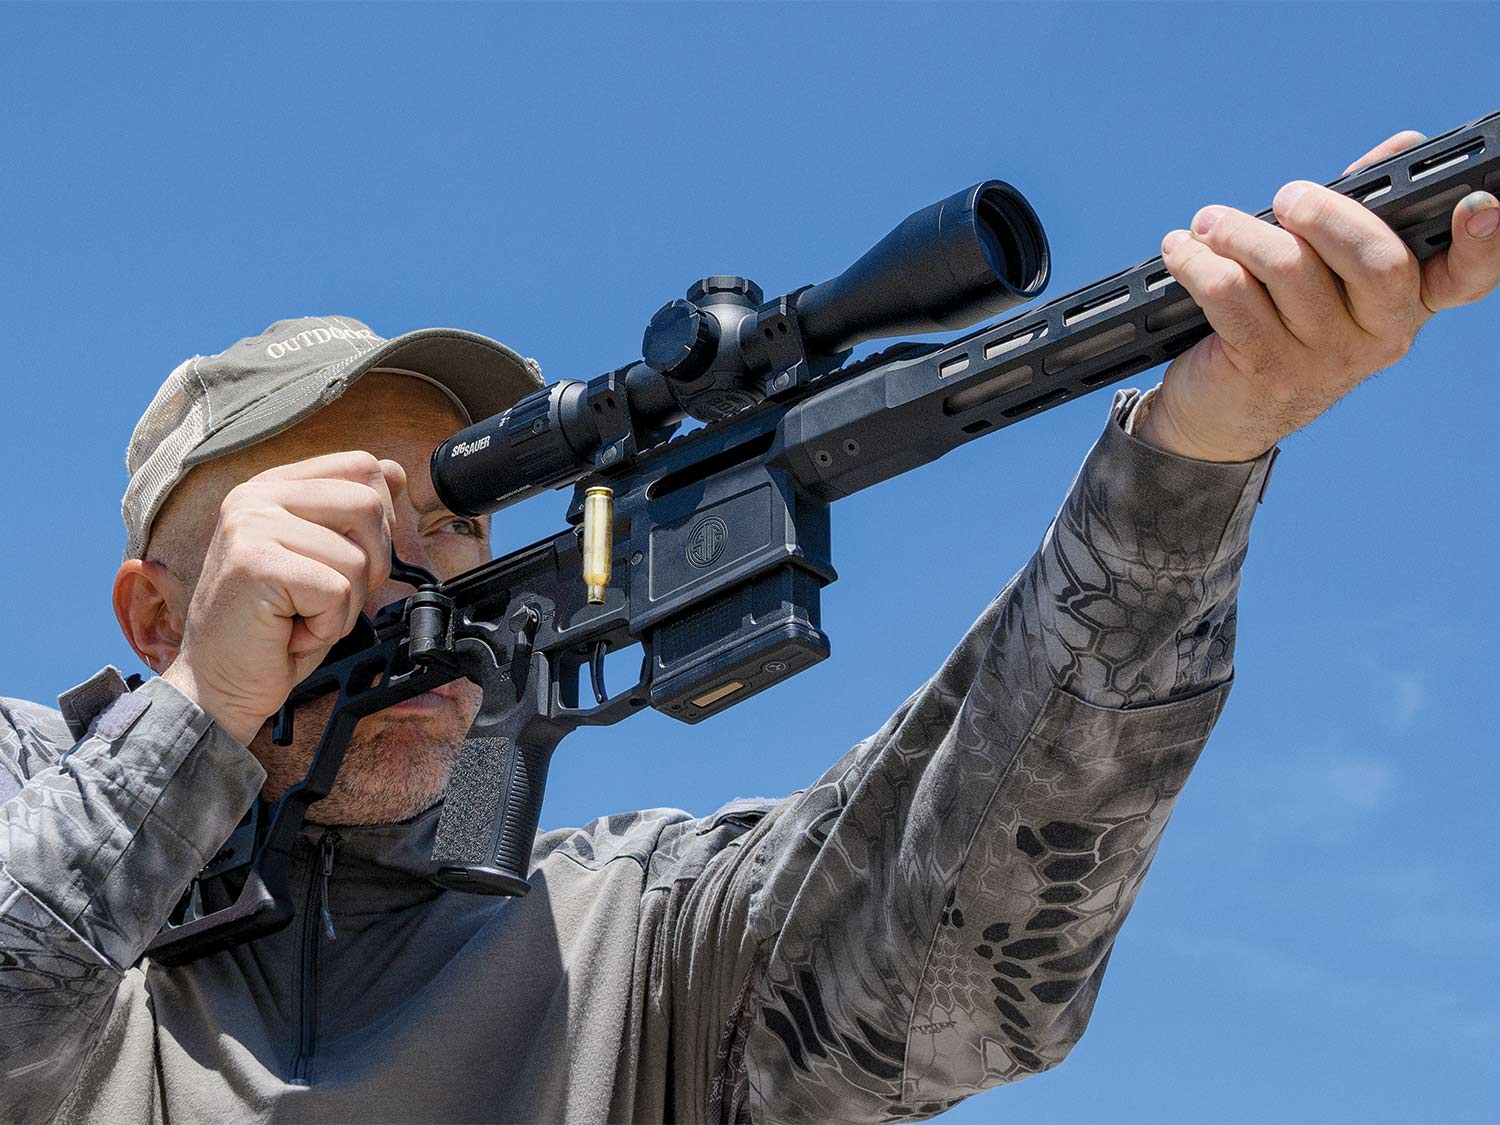 A man in a cap aims a Sig Sauer SIG Cross rifle during a gun test.